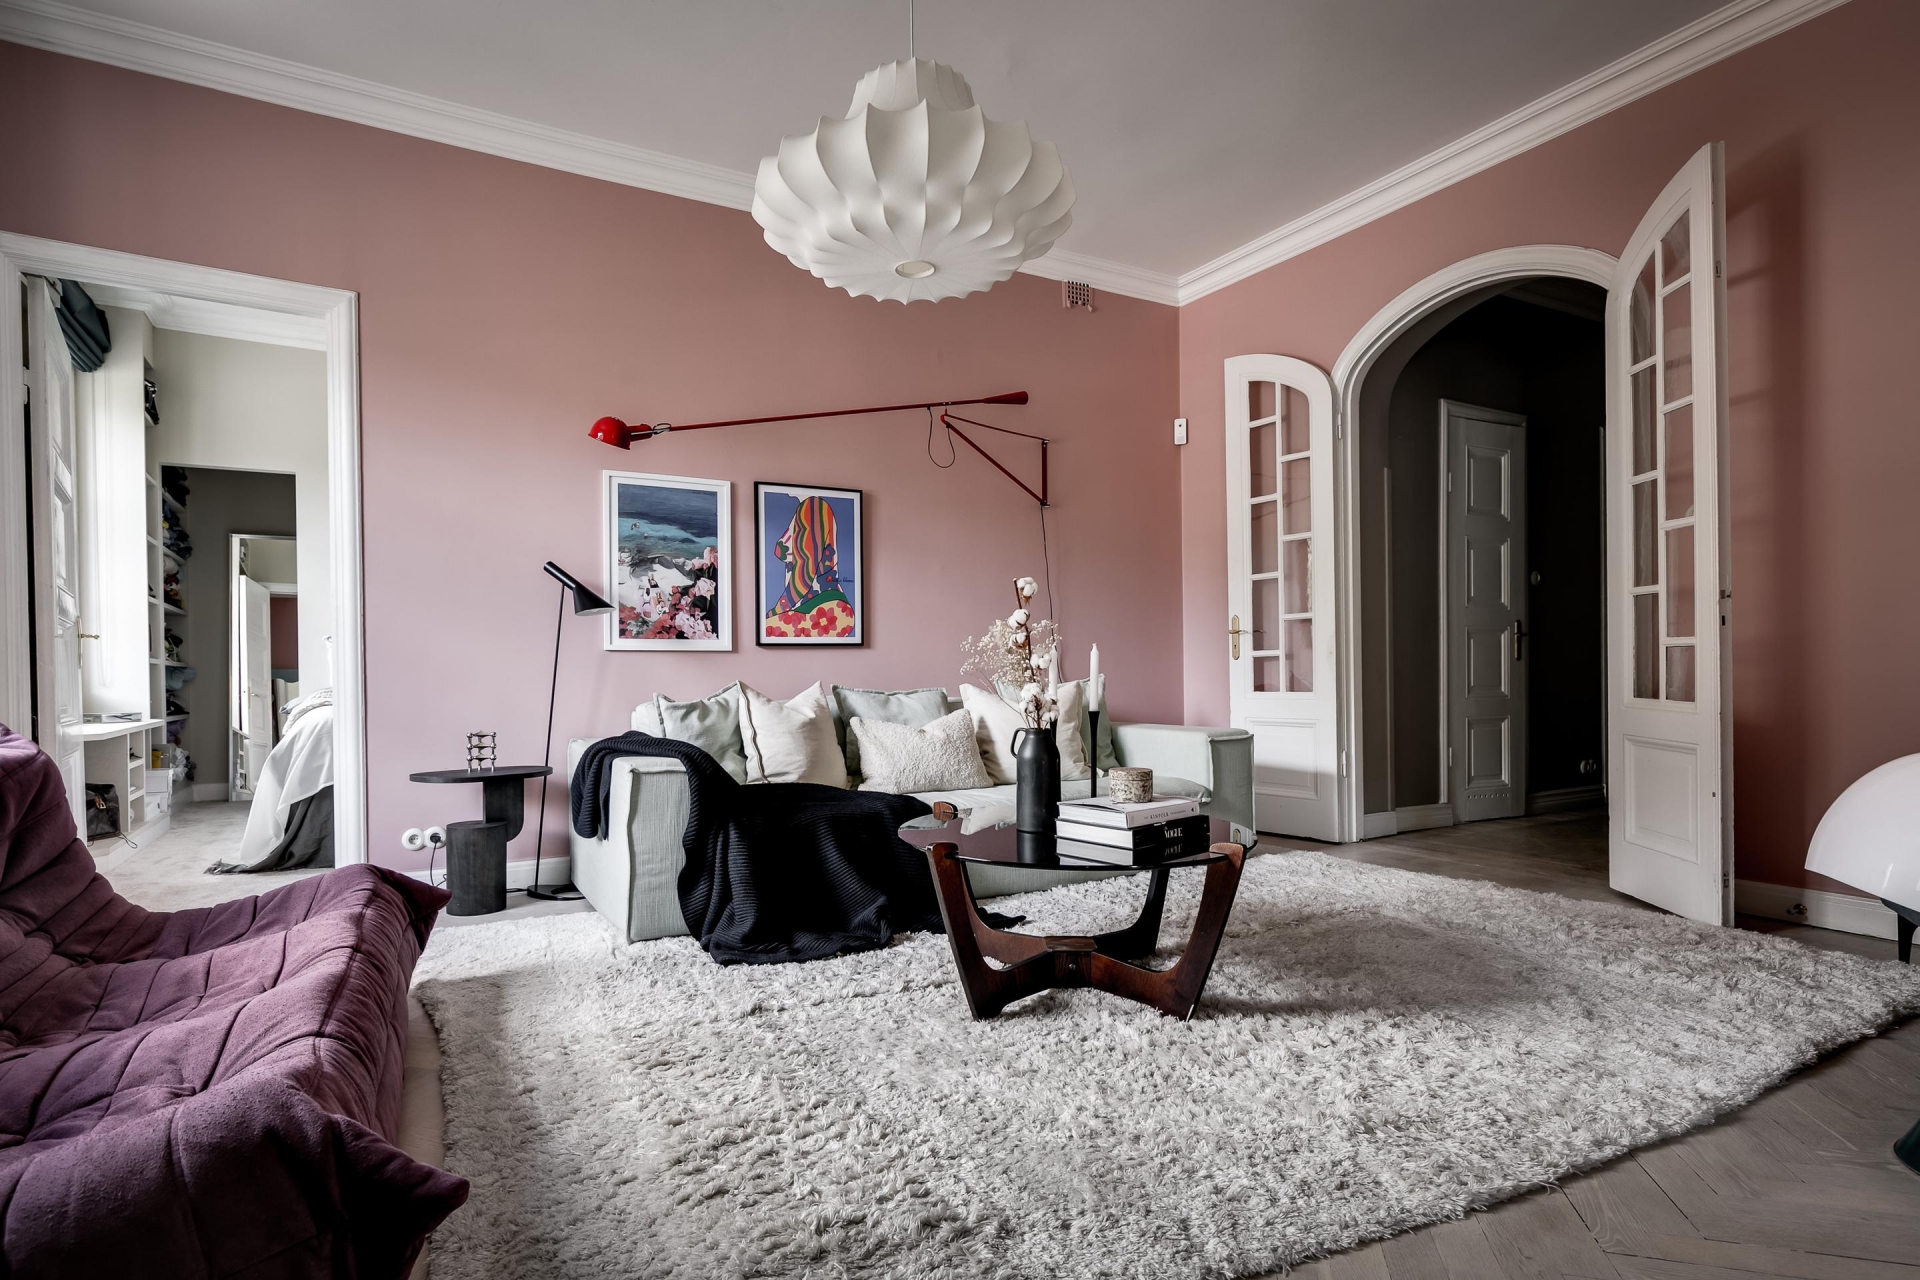 Phòng khách trong căn hộ của một nữ blogger thời trang người Thụy Điển, với phông nền tường màu hồng ngọt ngào, nội thất cầu kỳ, nhờ vậy mà tấm thảm trải sàn màu xám nhạt đã cân bằng lại cái nhìn cho không gian không bị 'rối'.